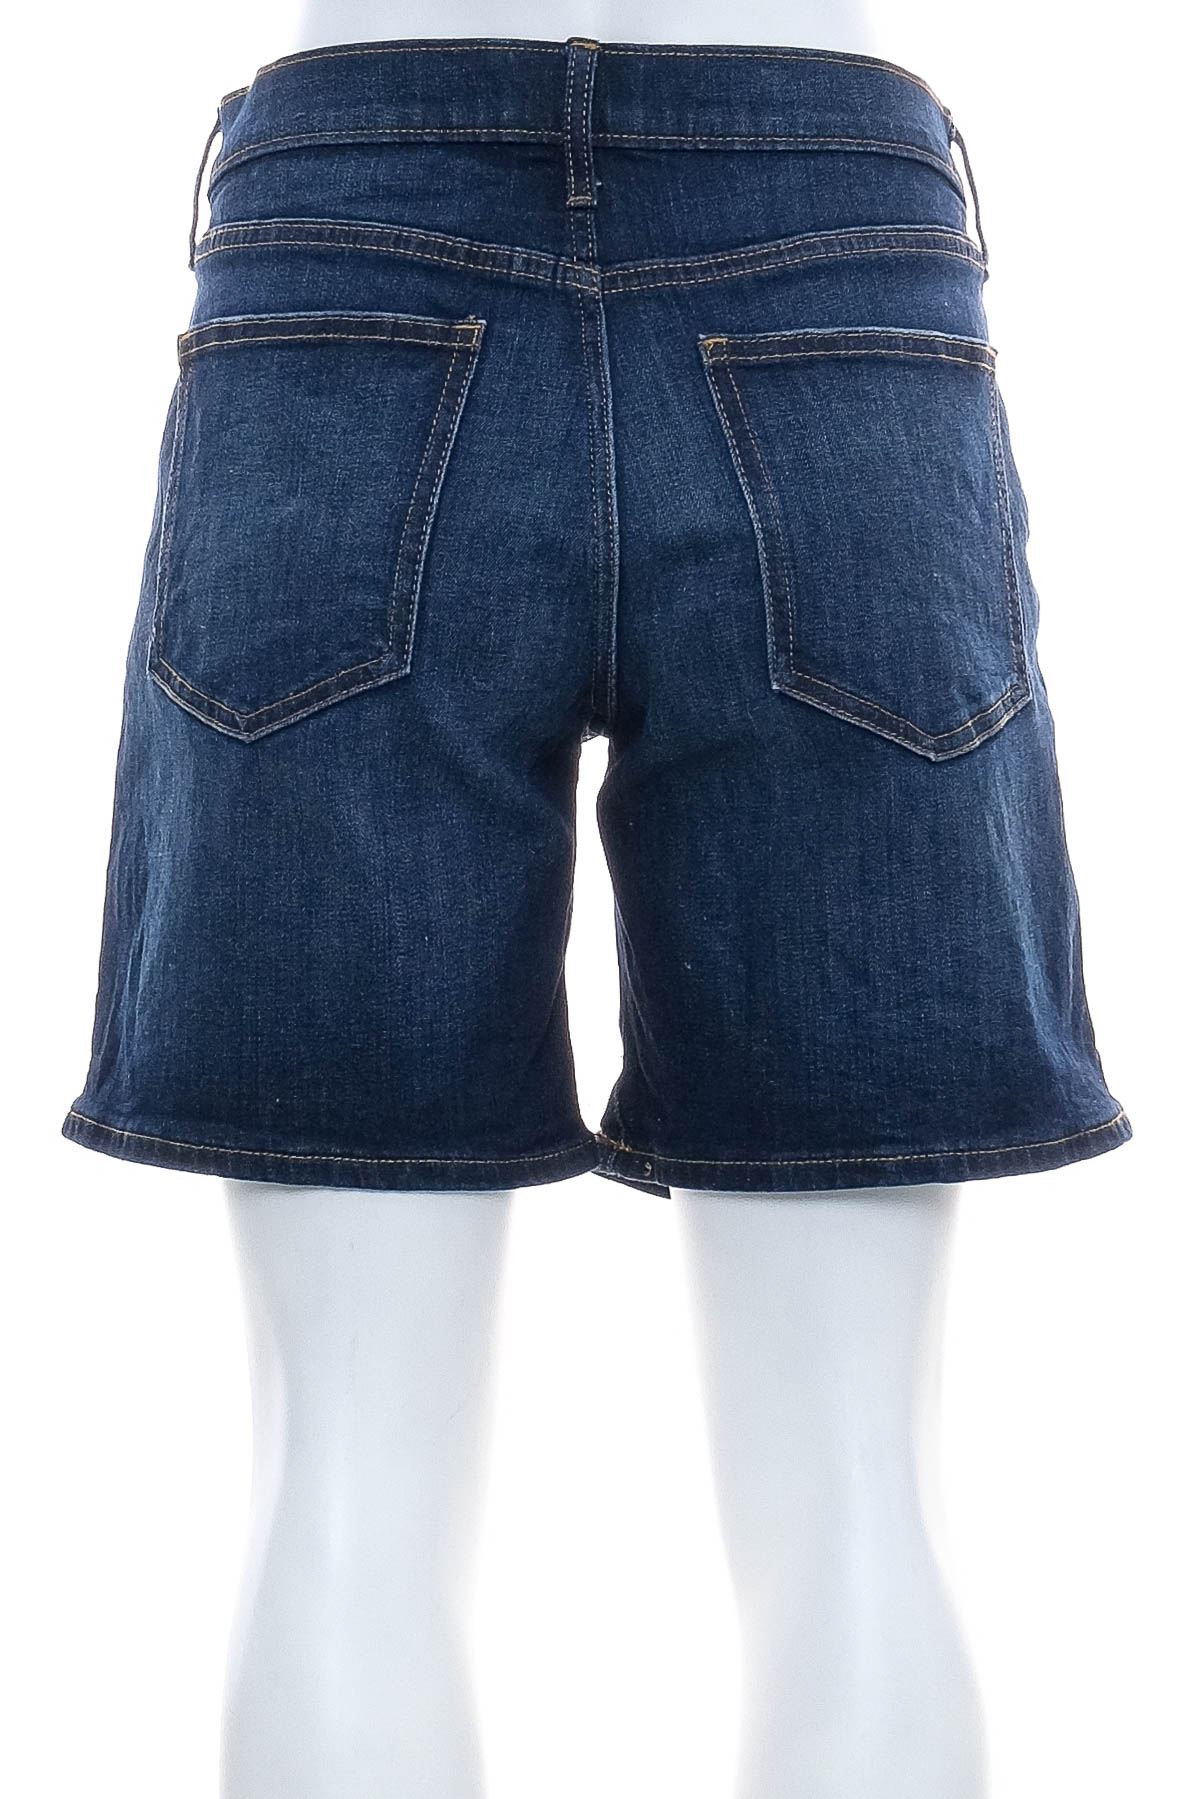 Female shorts - GAP - 1